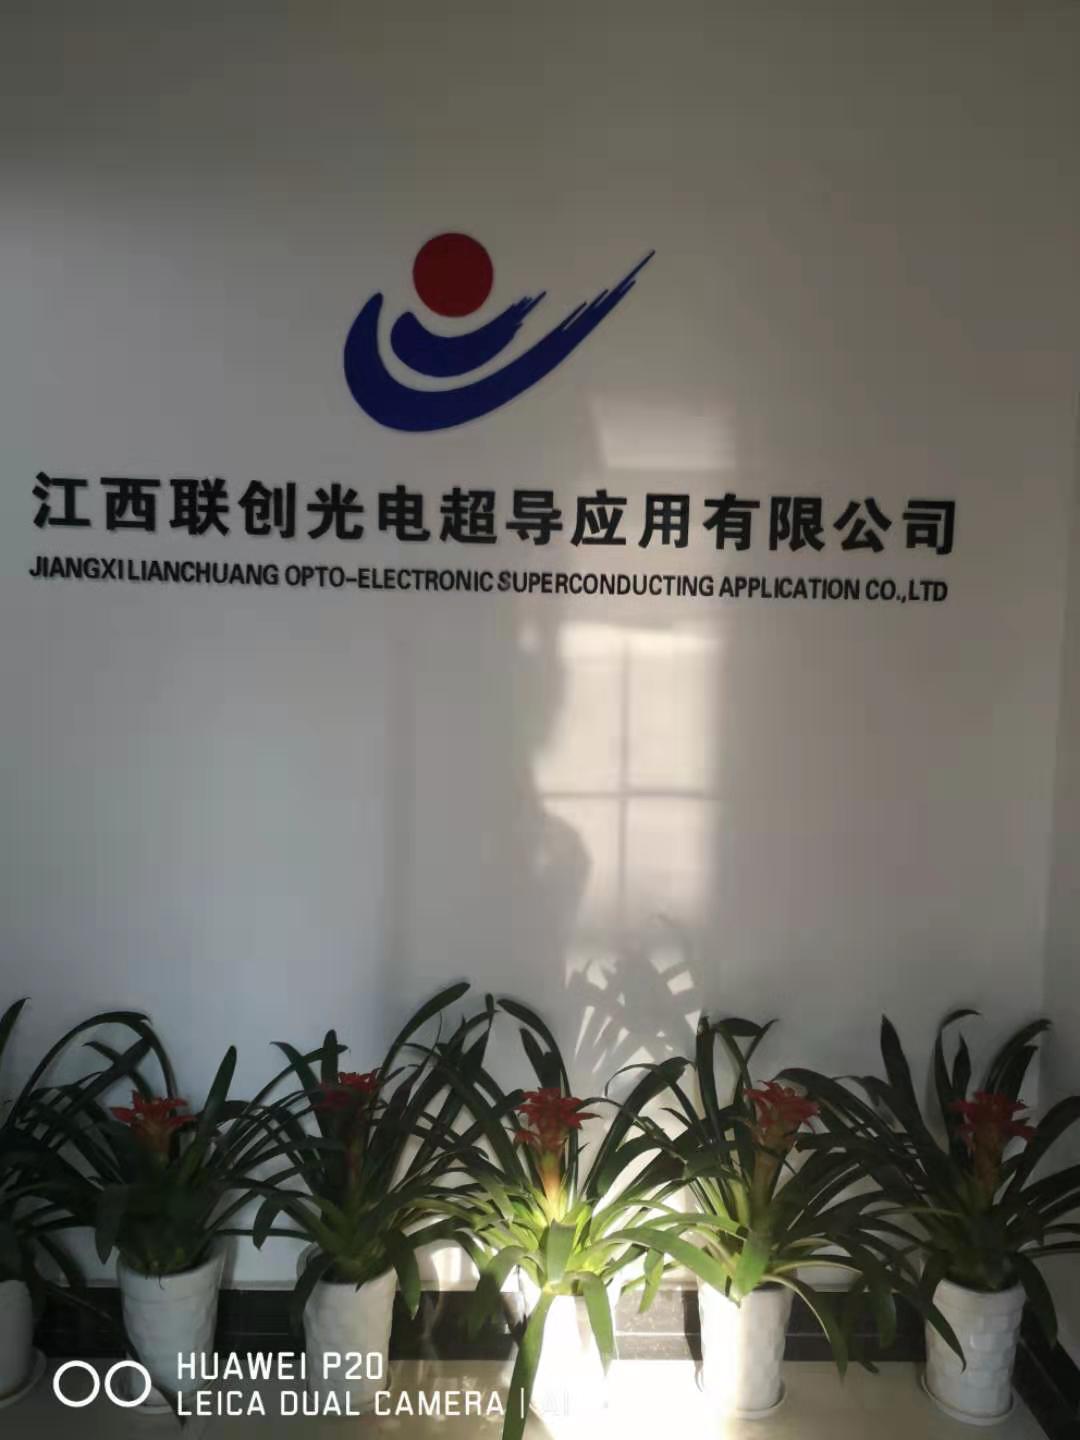 地址京东大道168号超导楼二楼公司描述江西联创光电超导应有有限公司